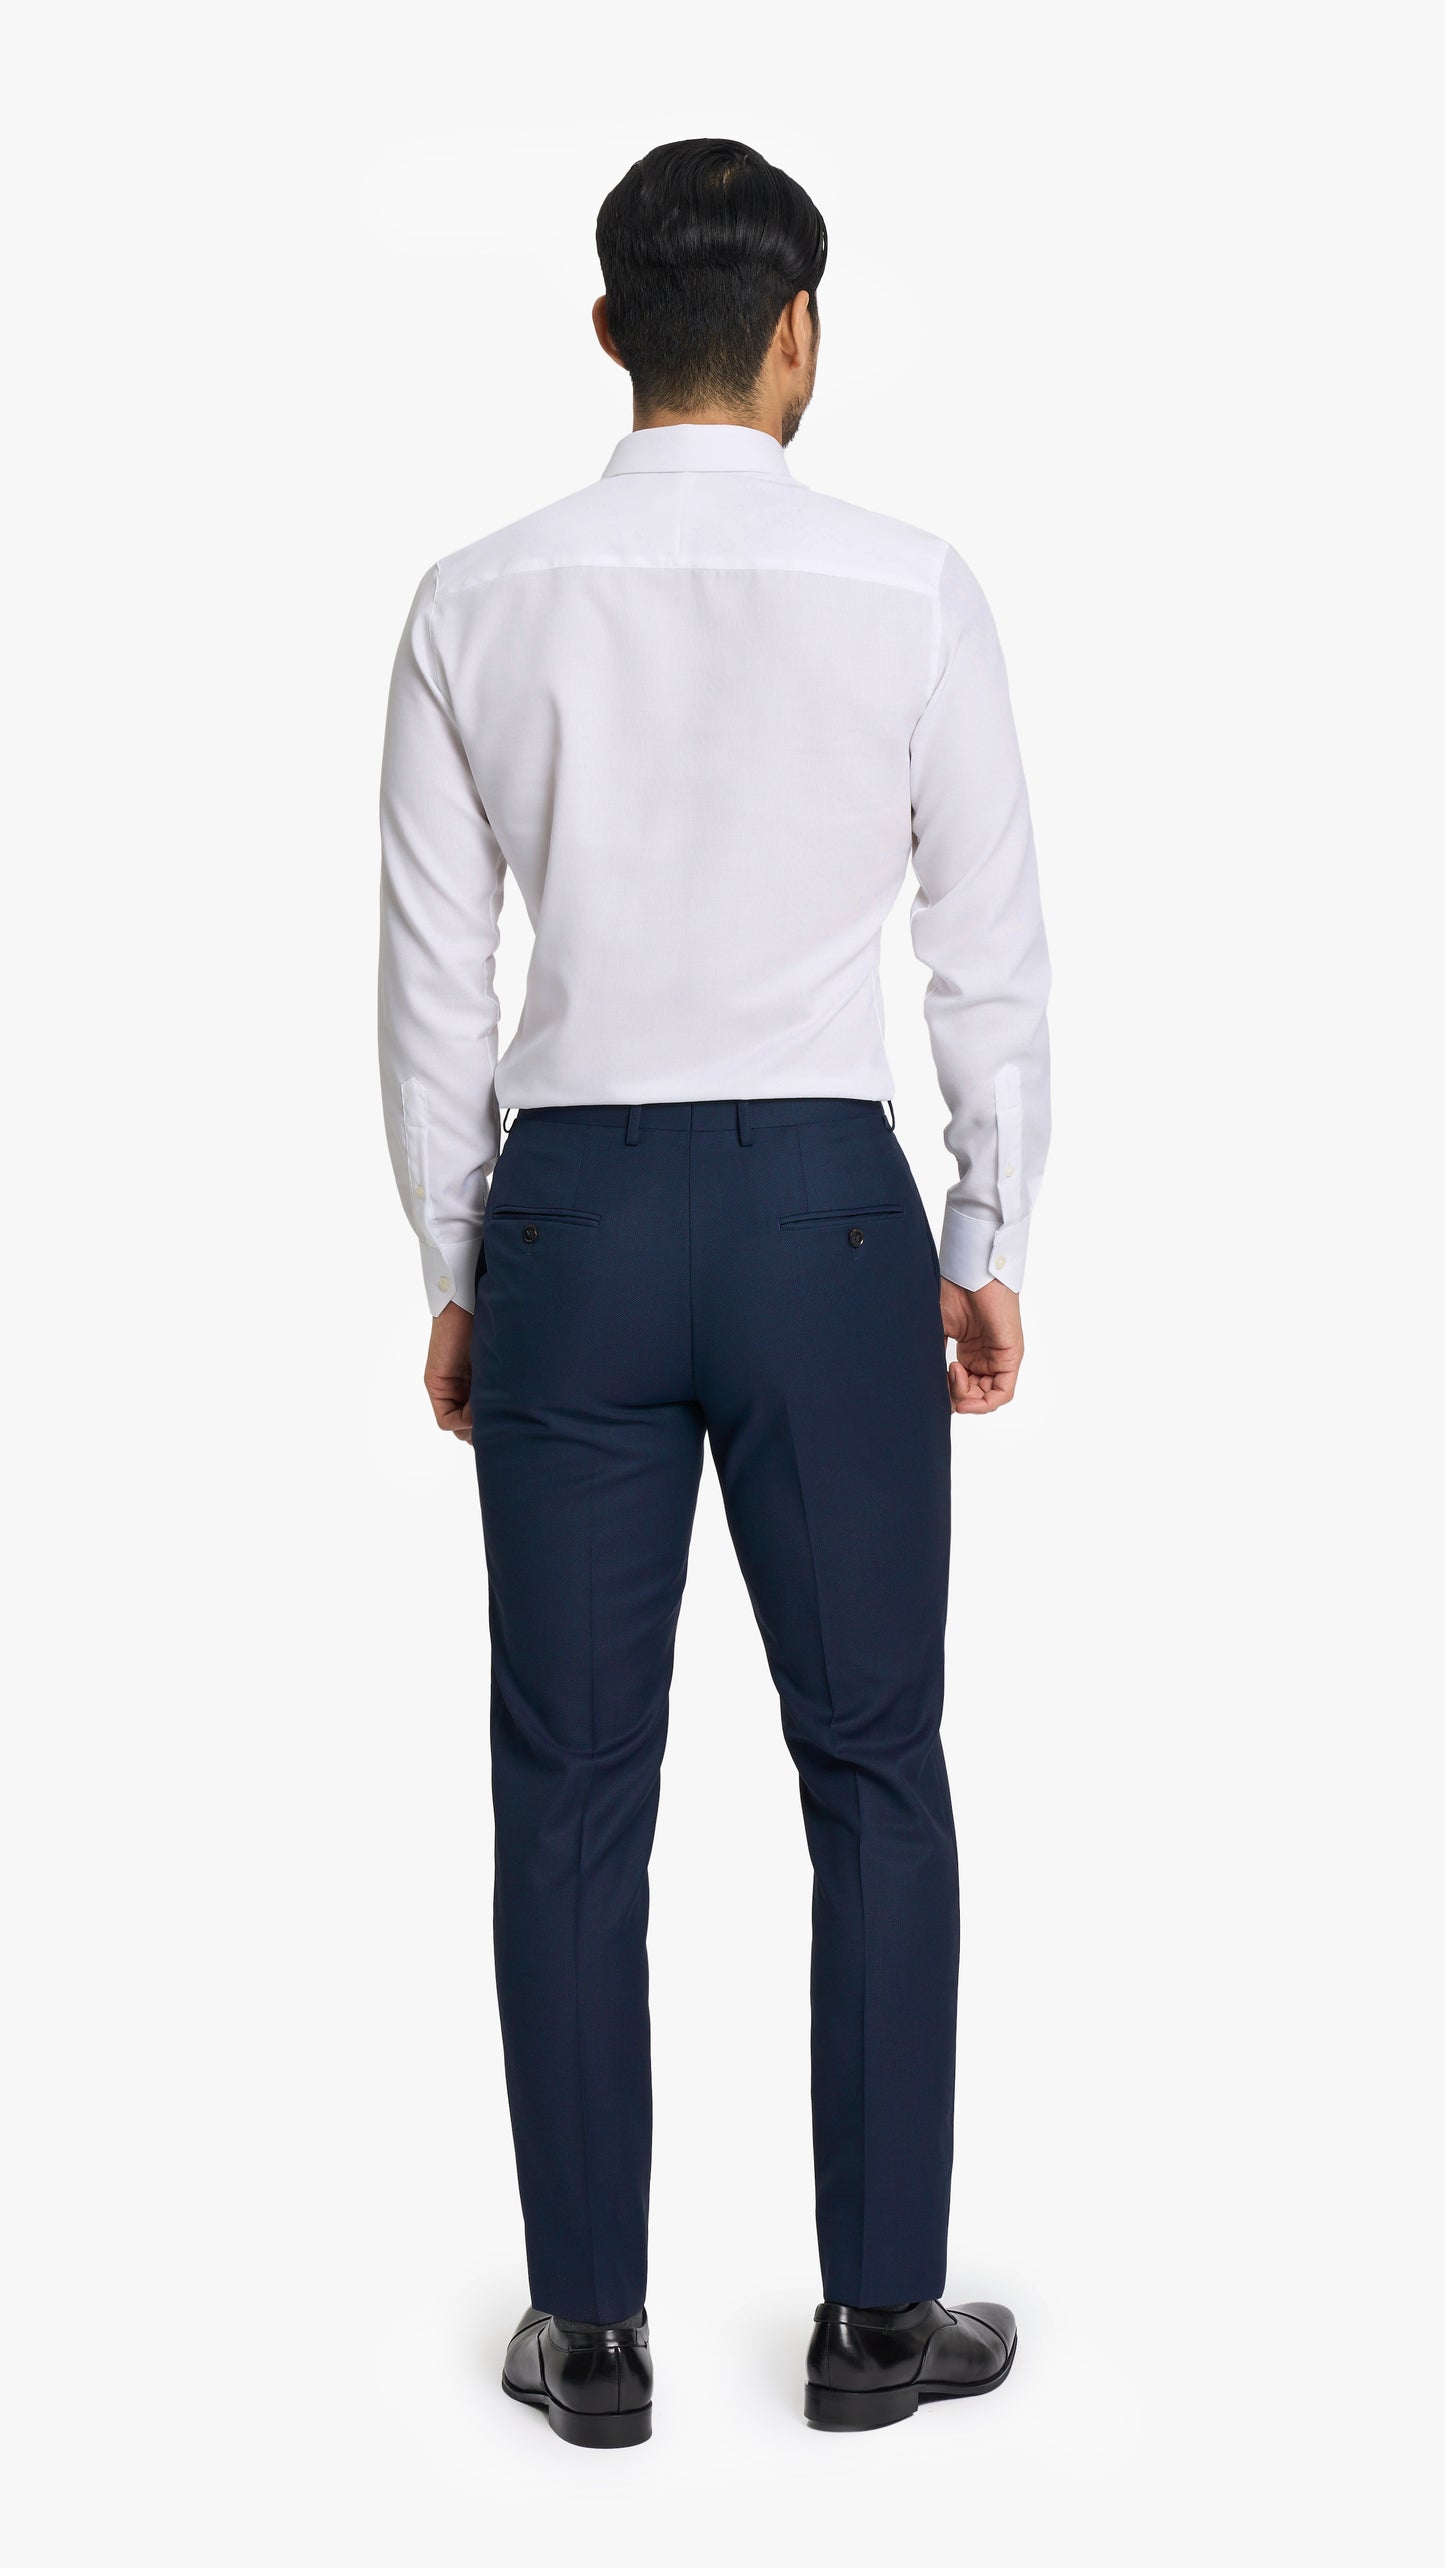 Navy Twill Custom Trouser